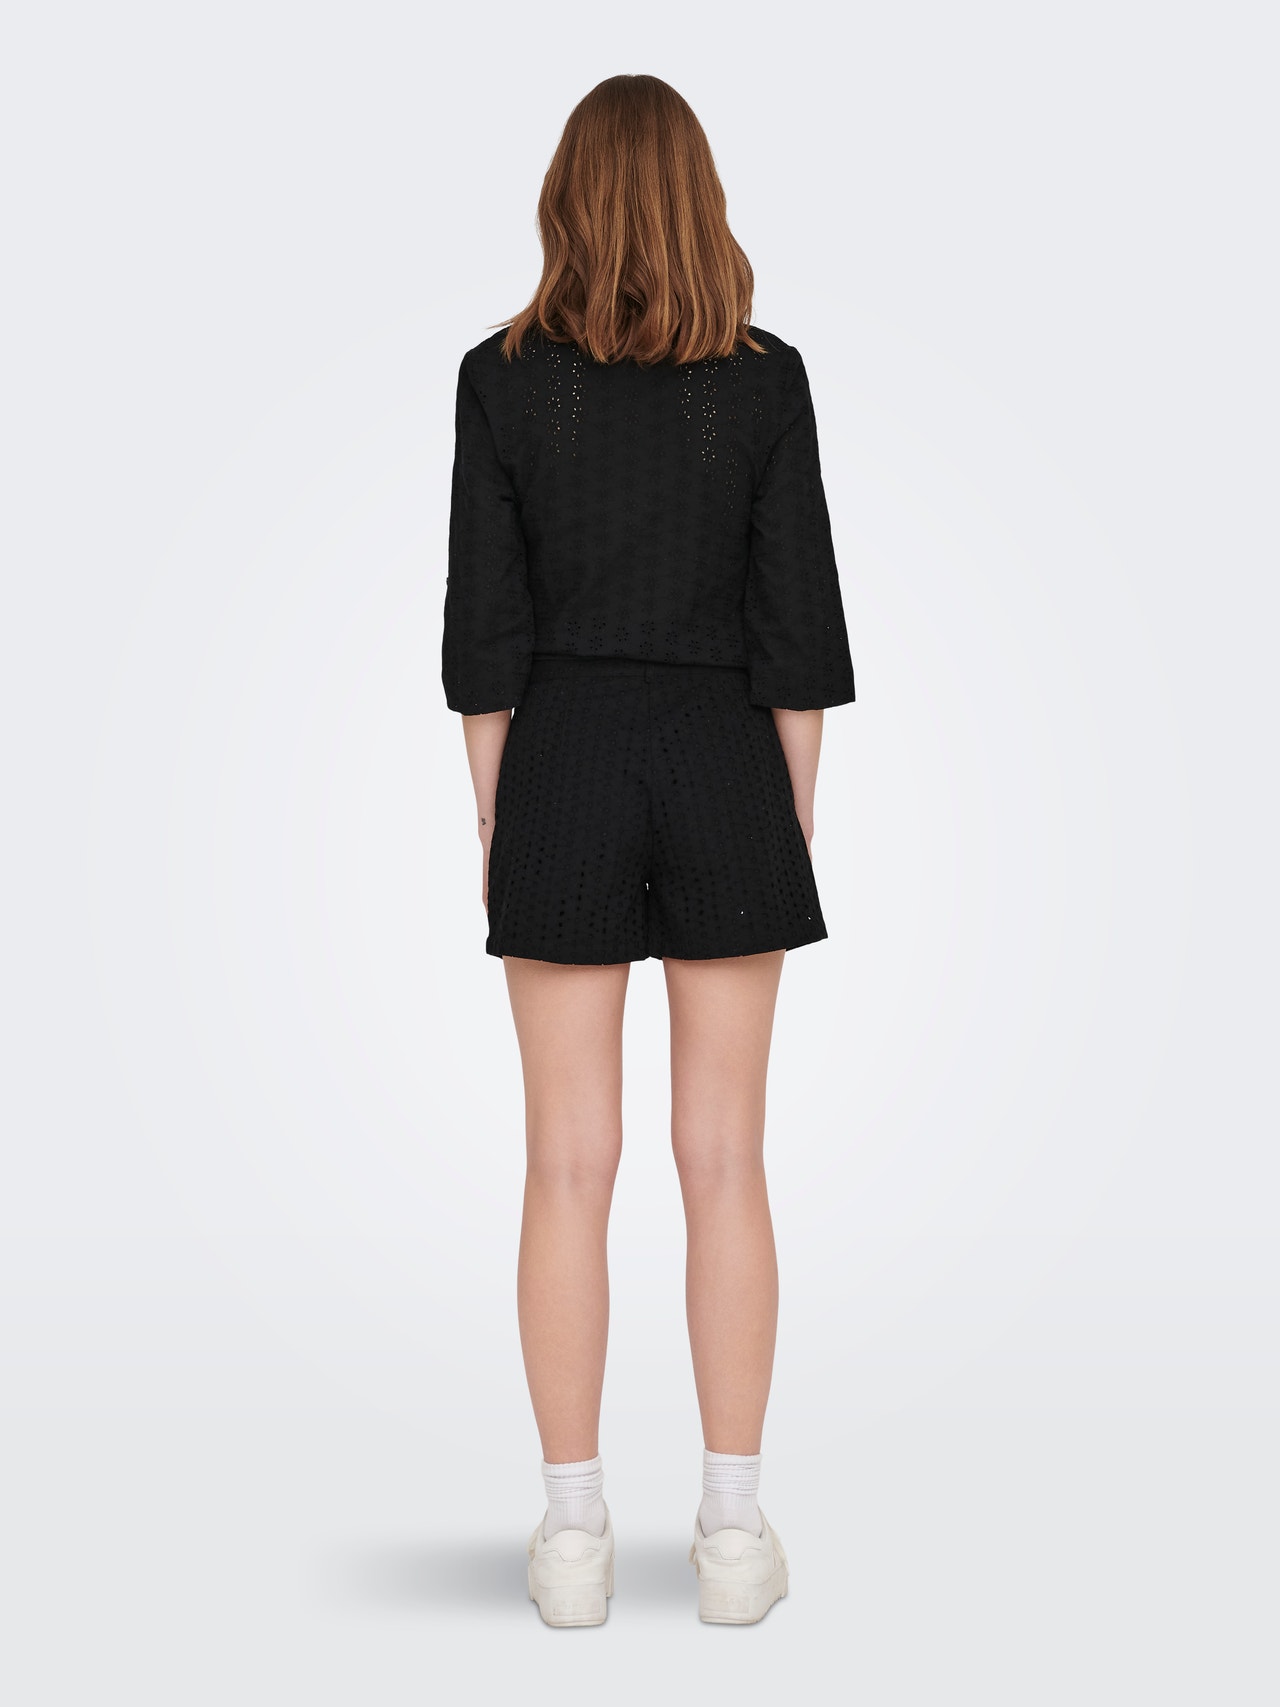 ONLY Shorts Regular Fit -Black - 15291874